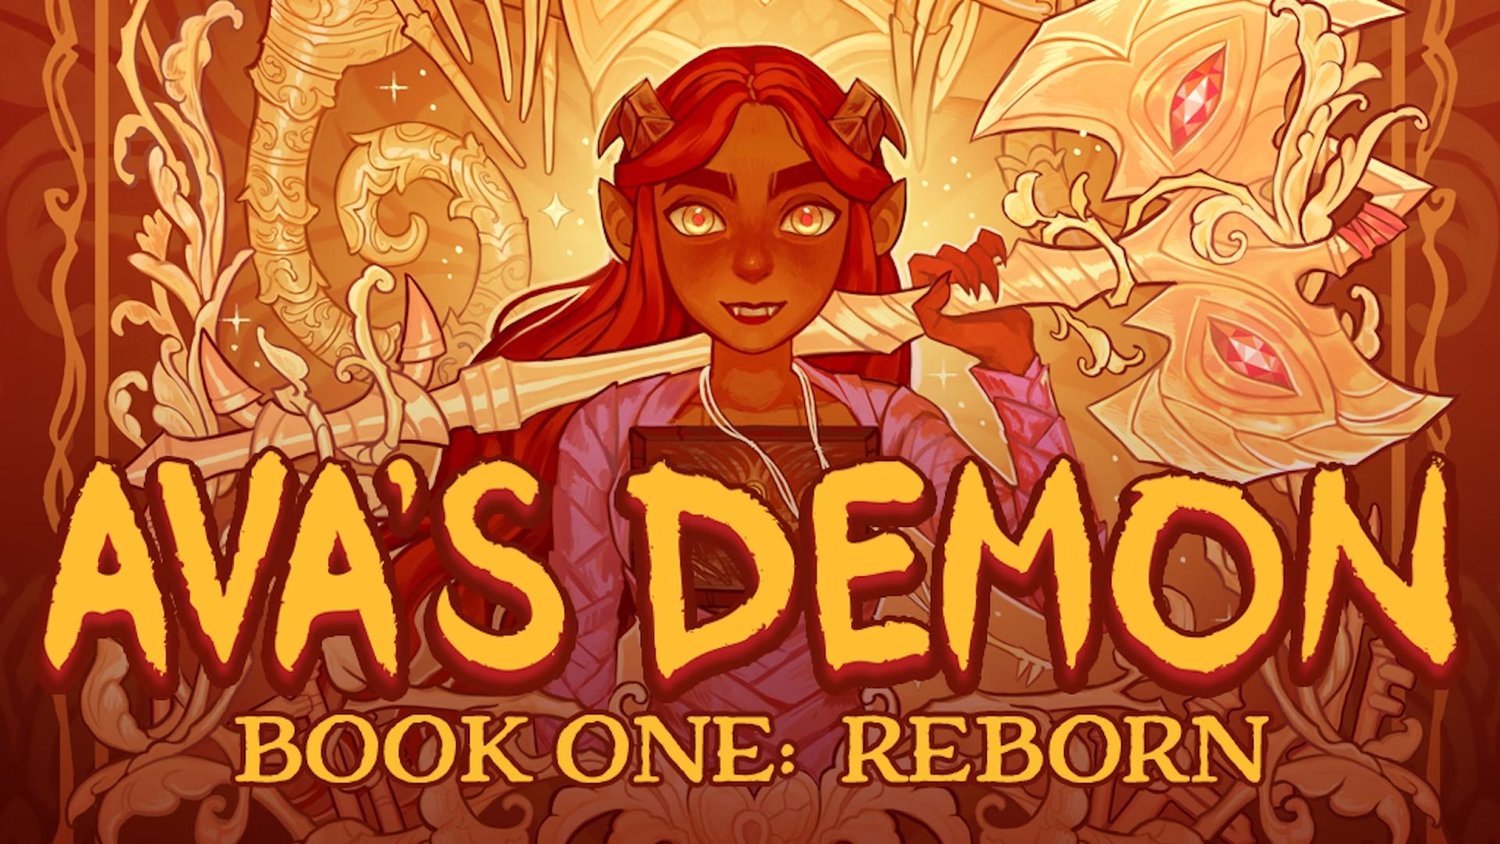 Webcomic AVA’S DEMON BOOK ONE: REBORN vient d’être imprimé pour la première fois